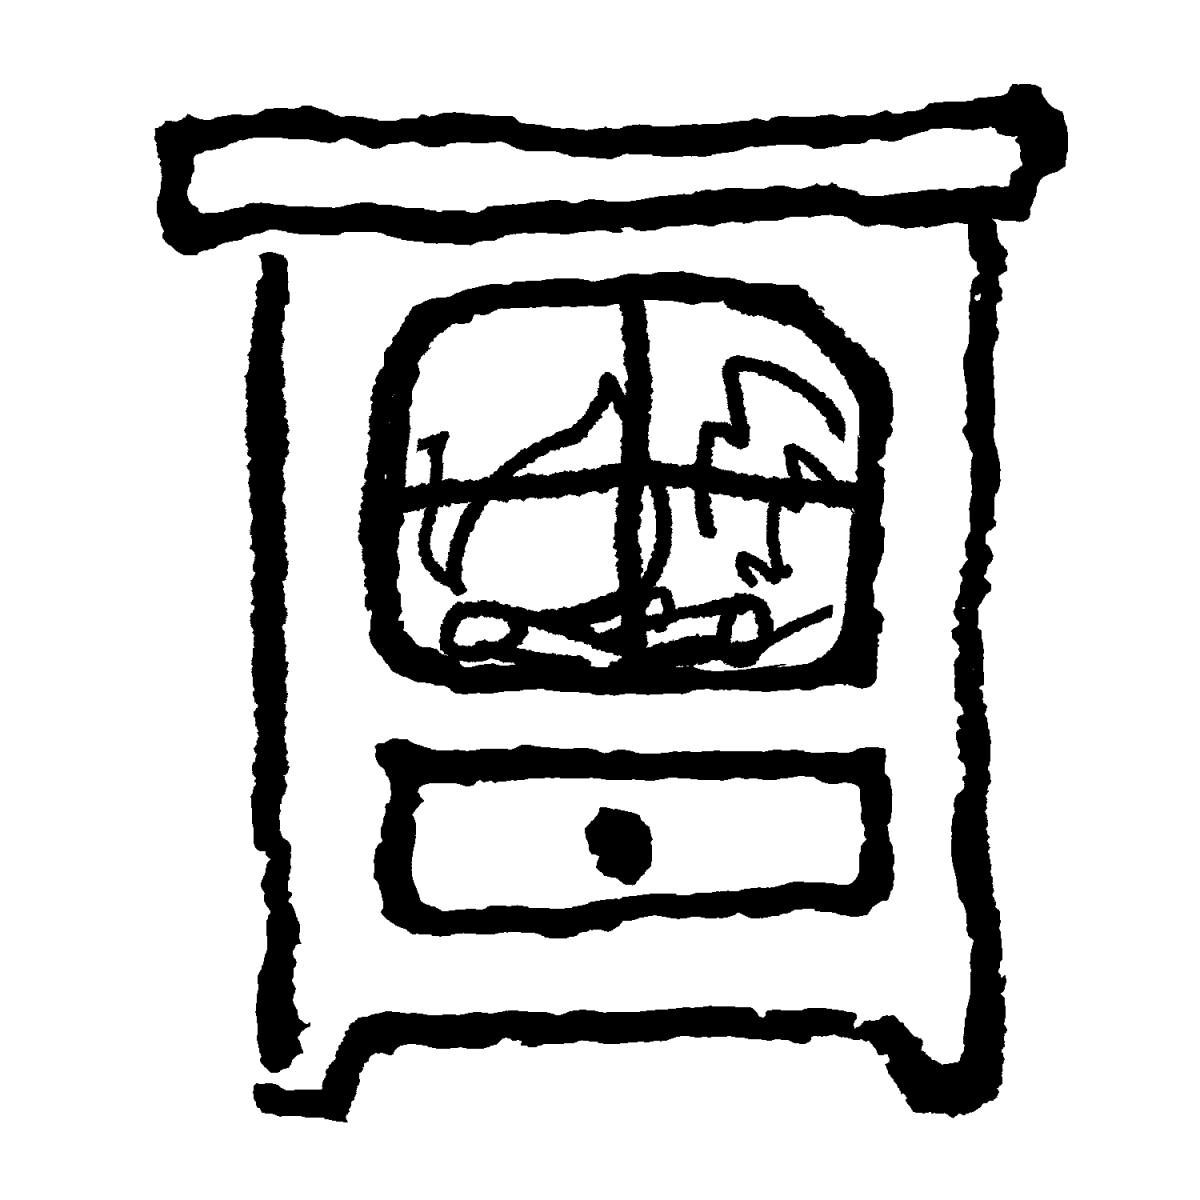 暖炉（だんろ）のイラスト / Fireplace Illustration